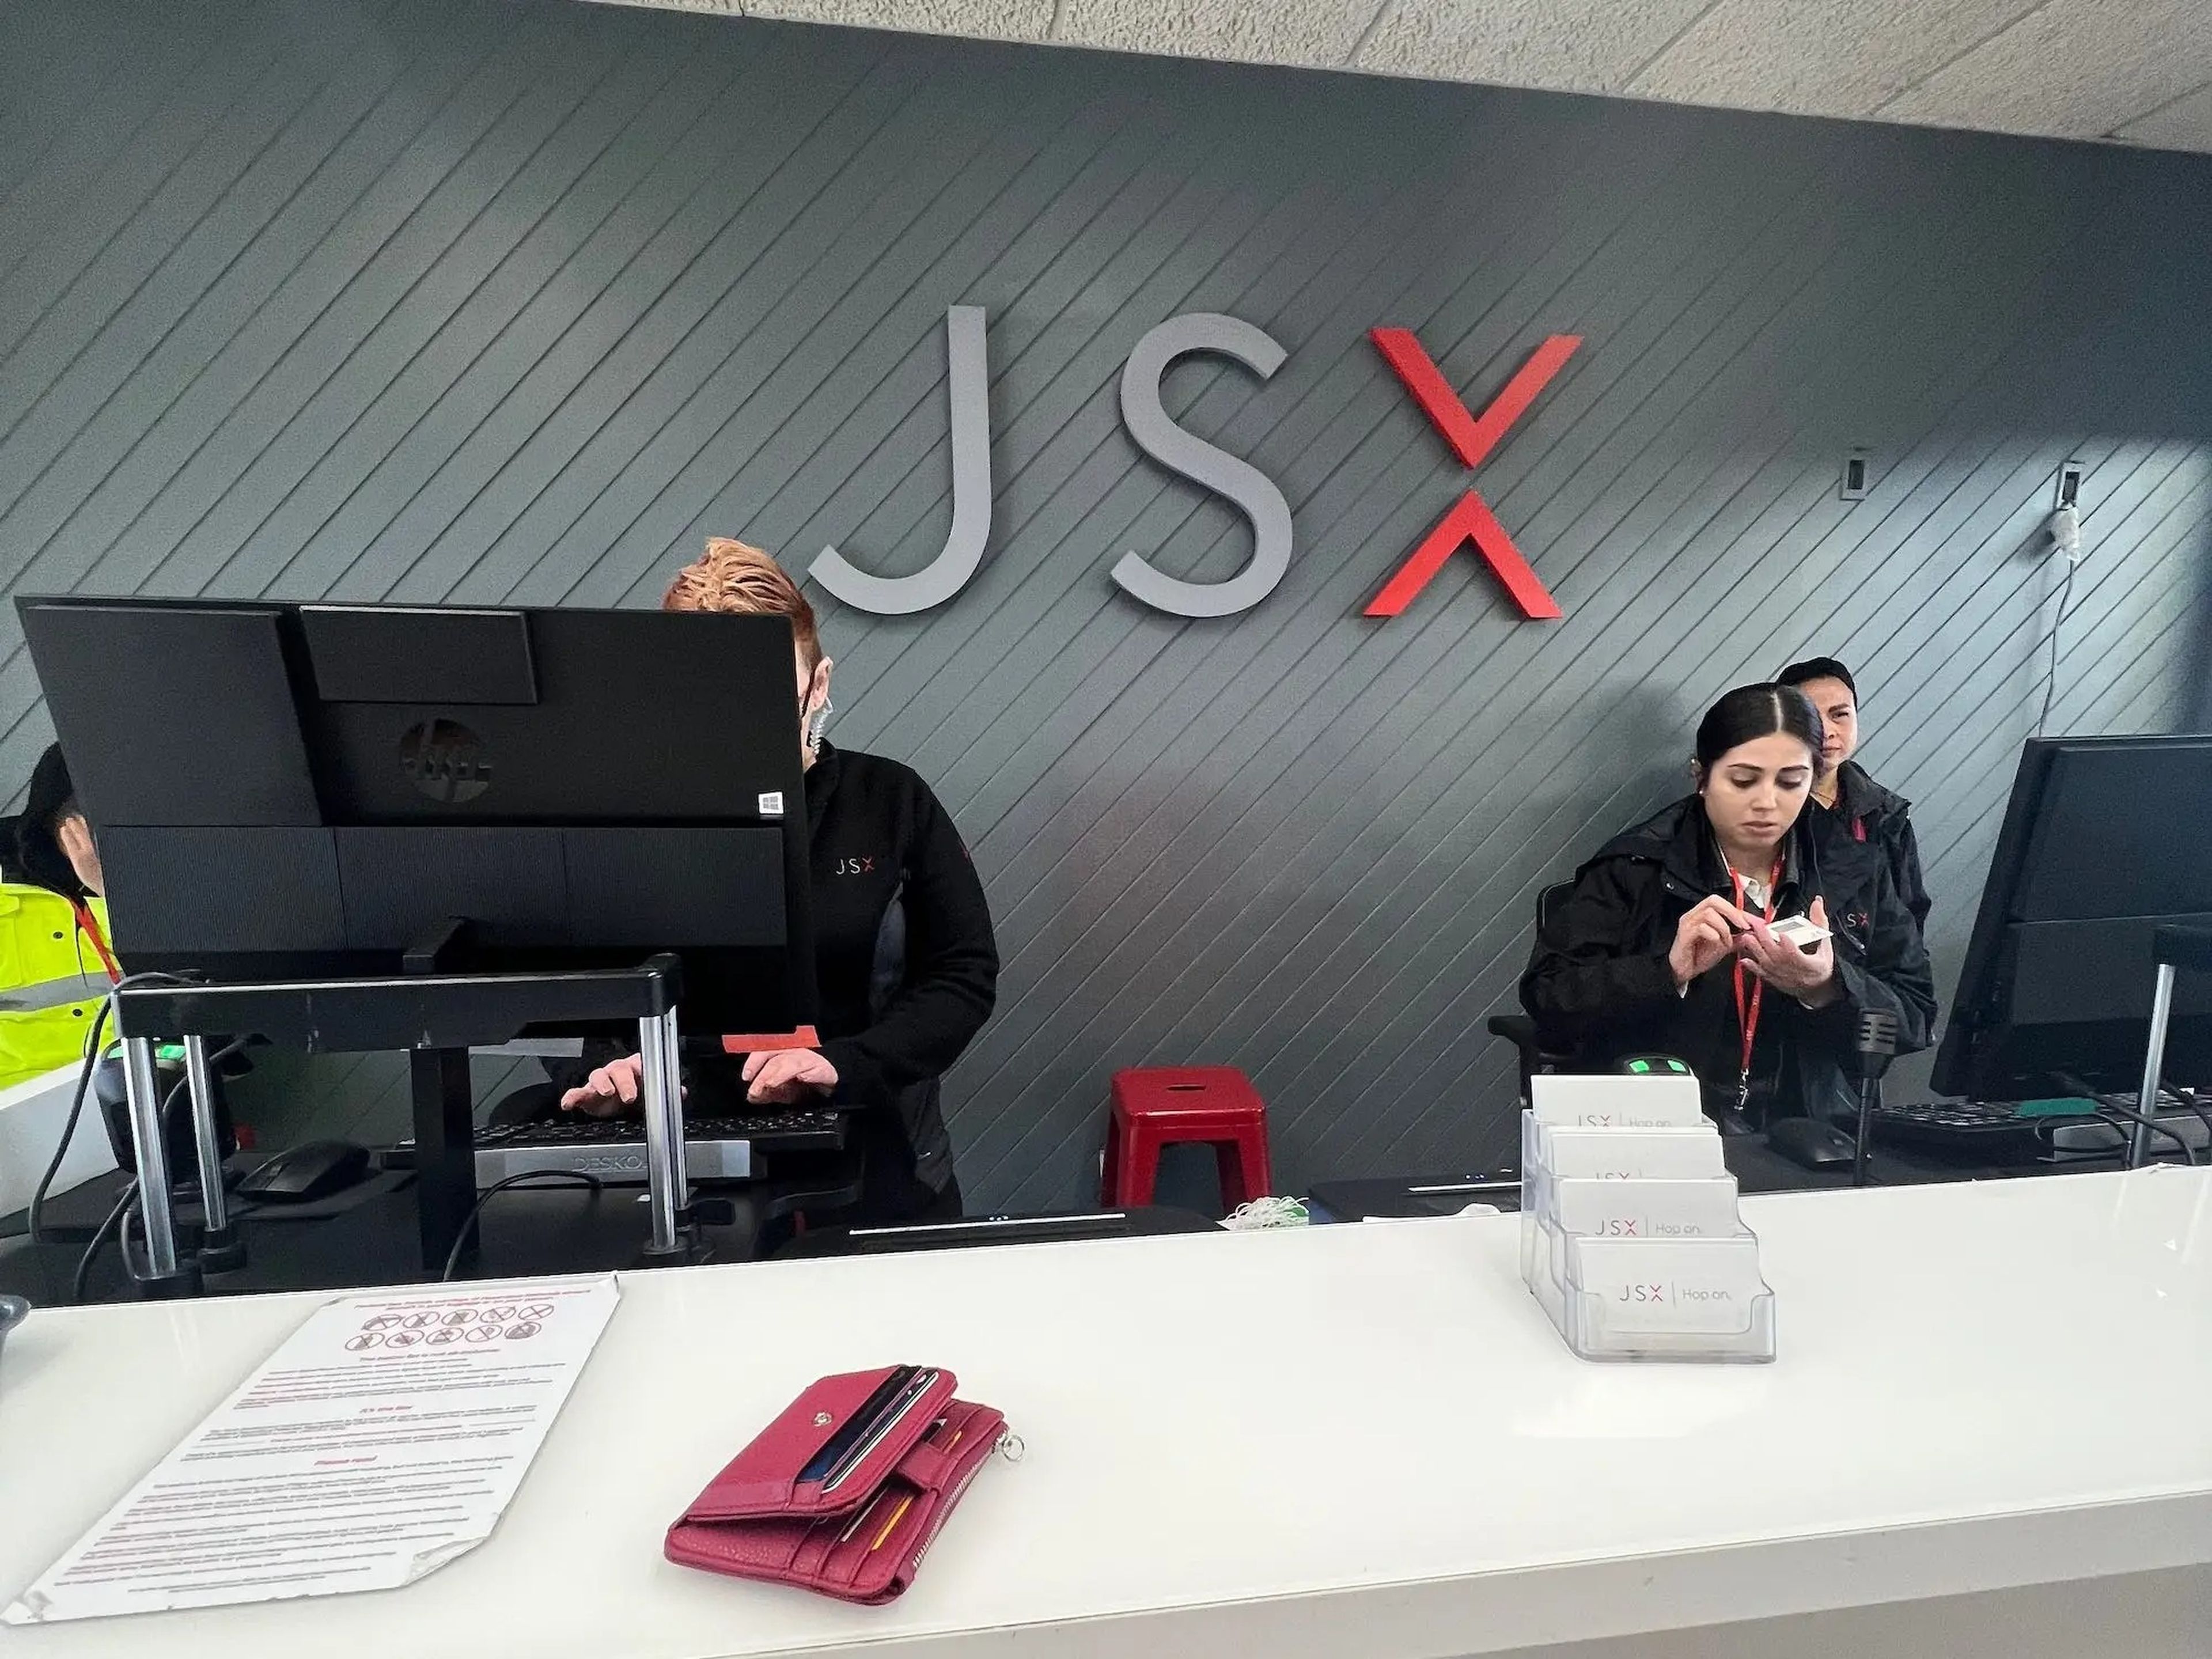 El mostrador de facturación de la terminal privada de JSX.